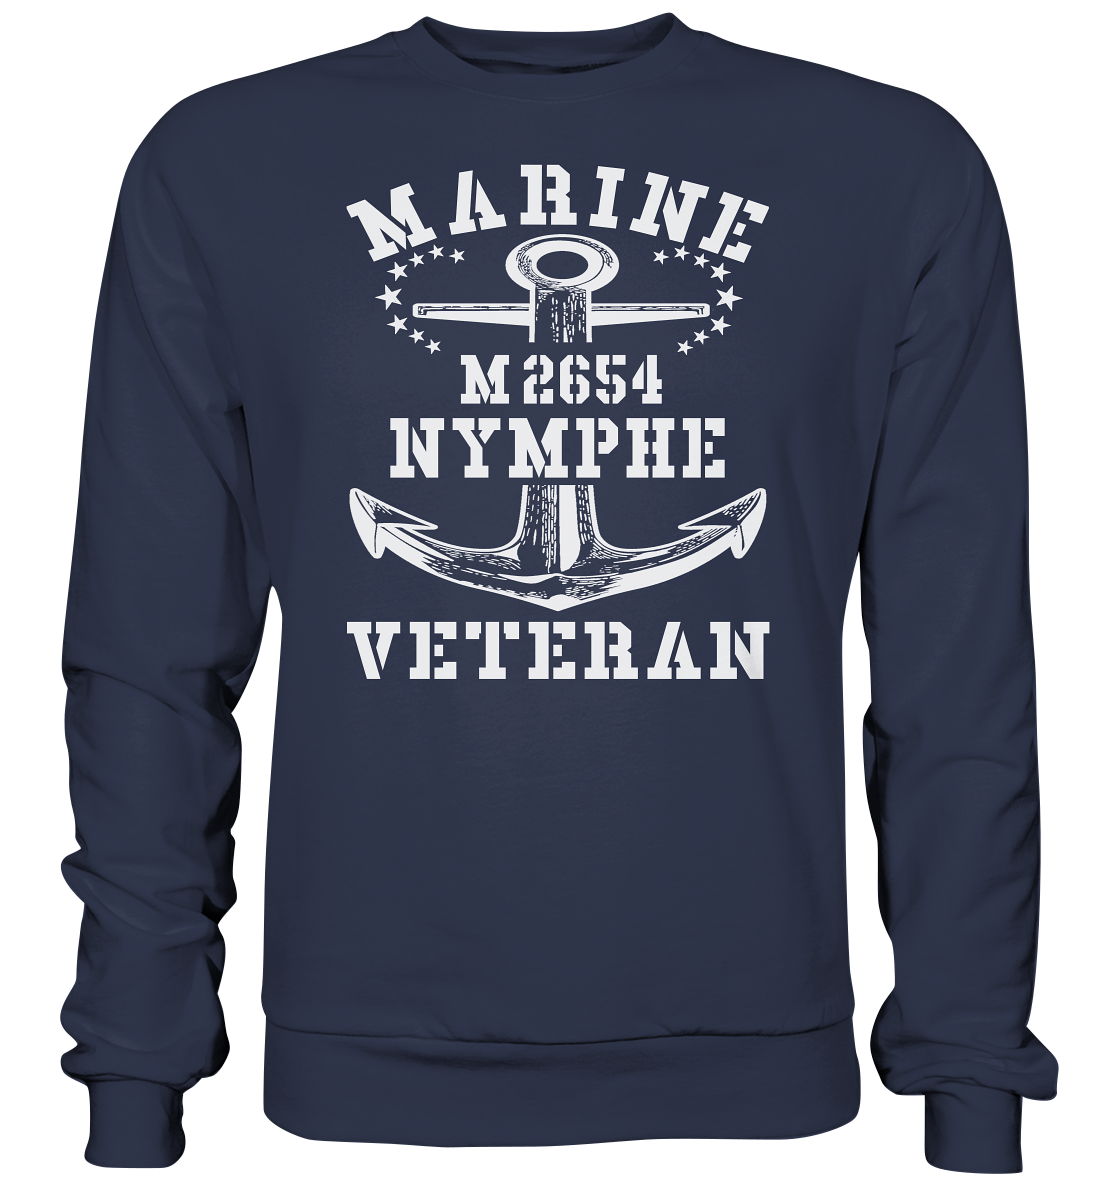 BiMi M2654 NYMPHE Marine Veteran - Premium Sweatshirt